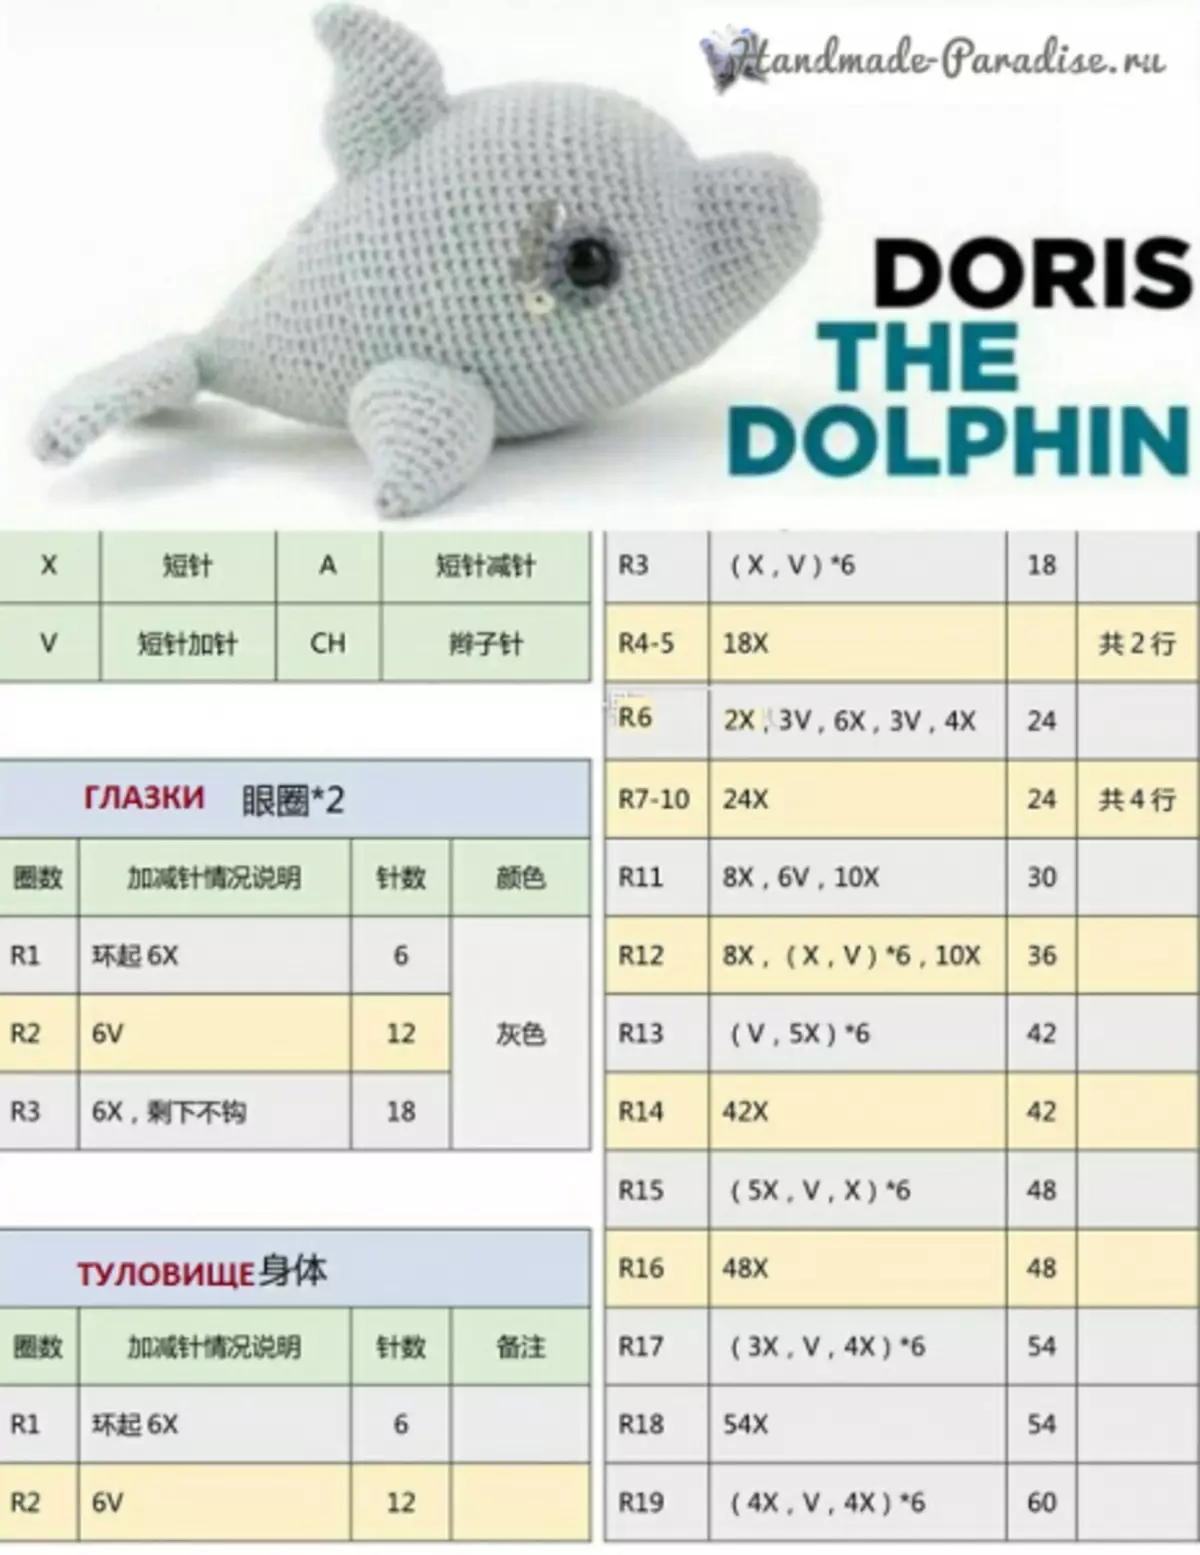 Дельфін гачком. опис в'язання